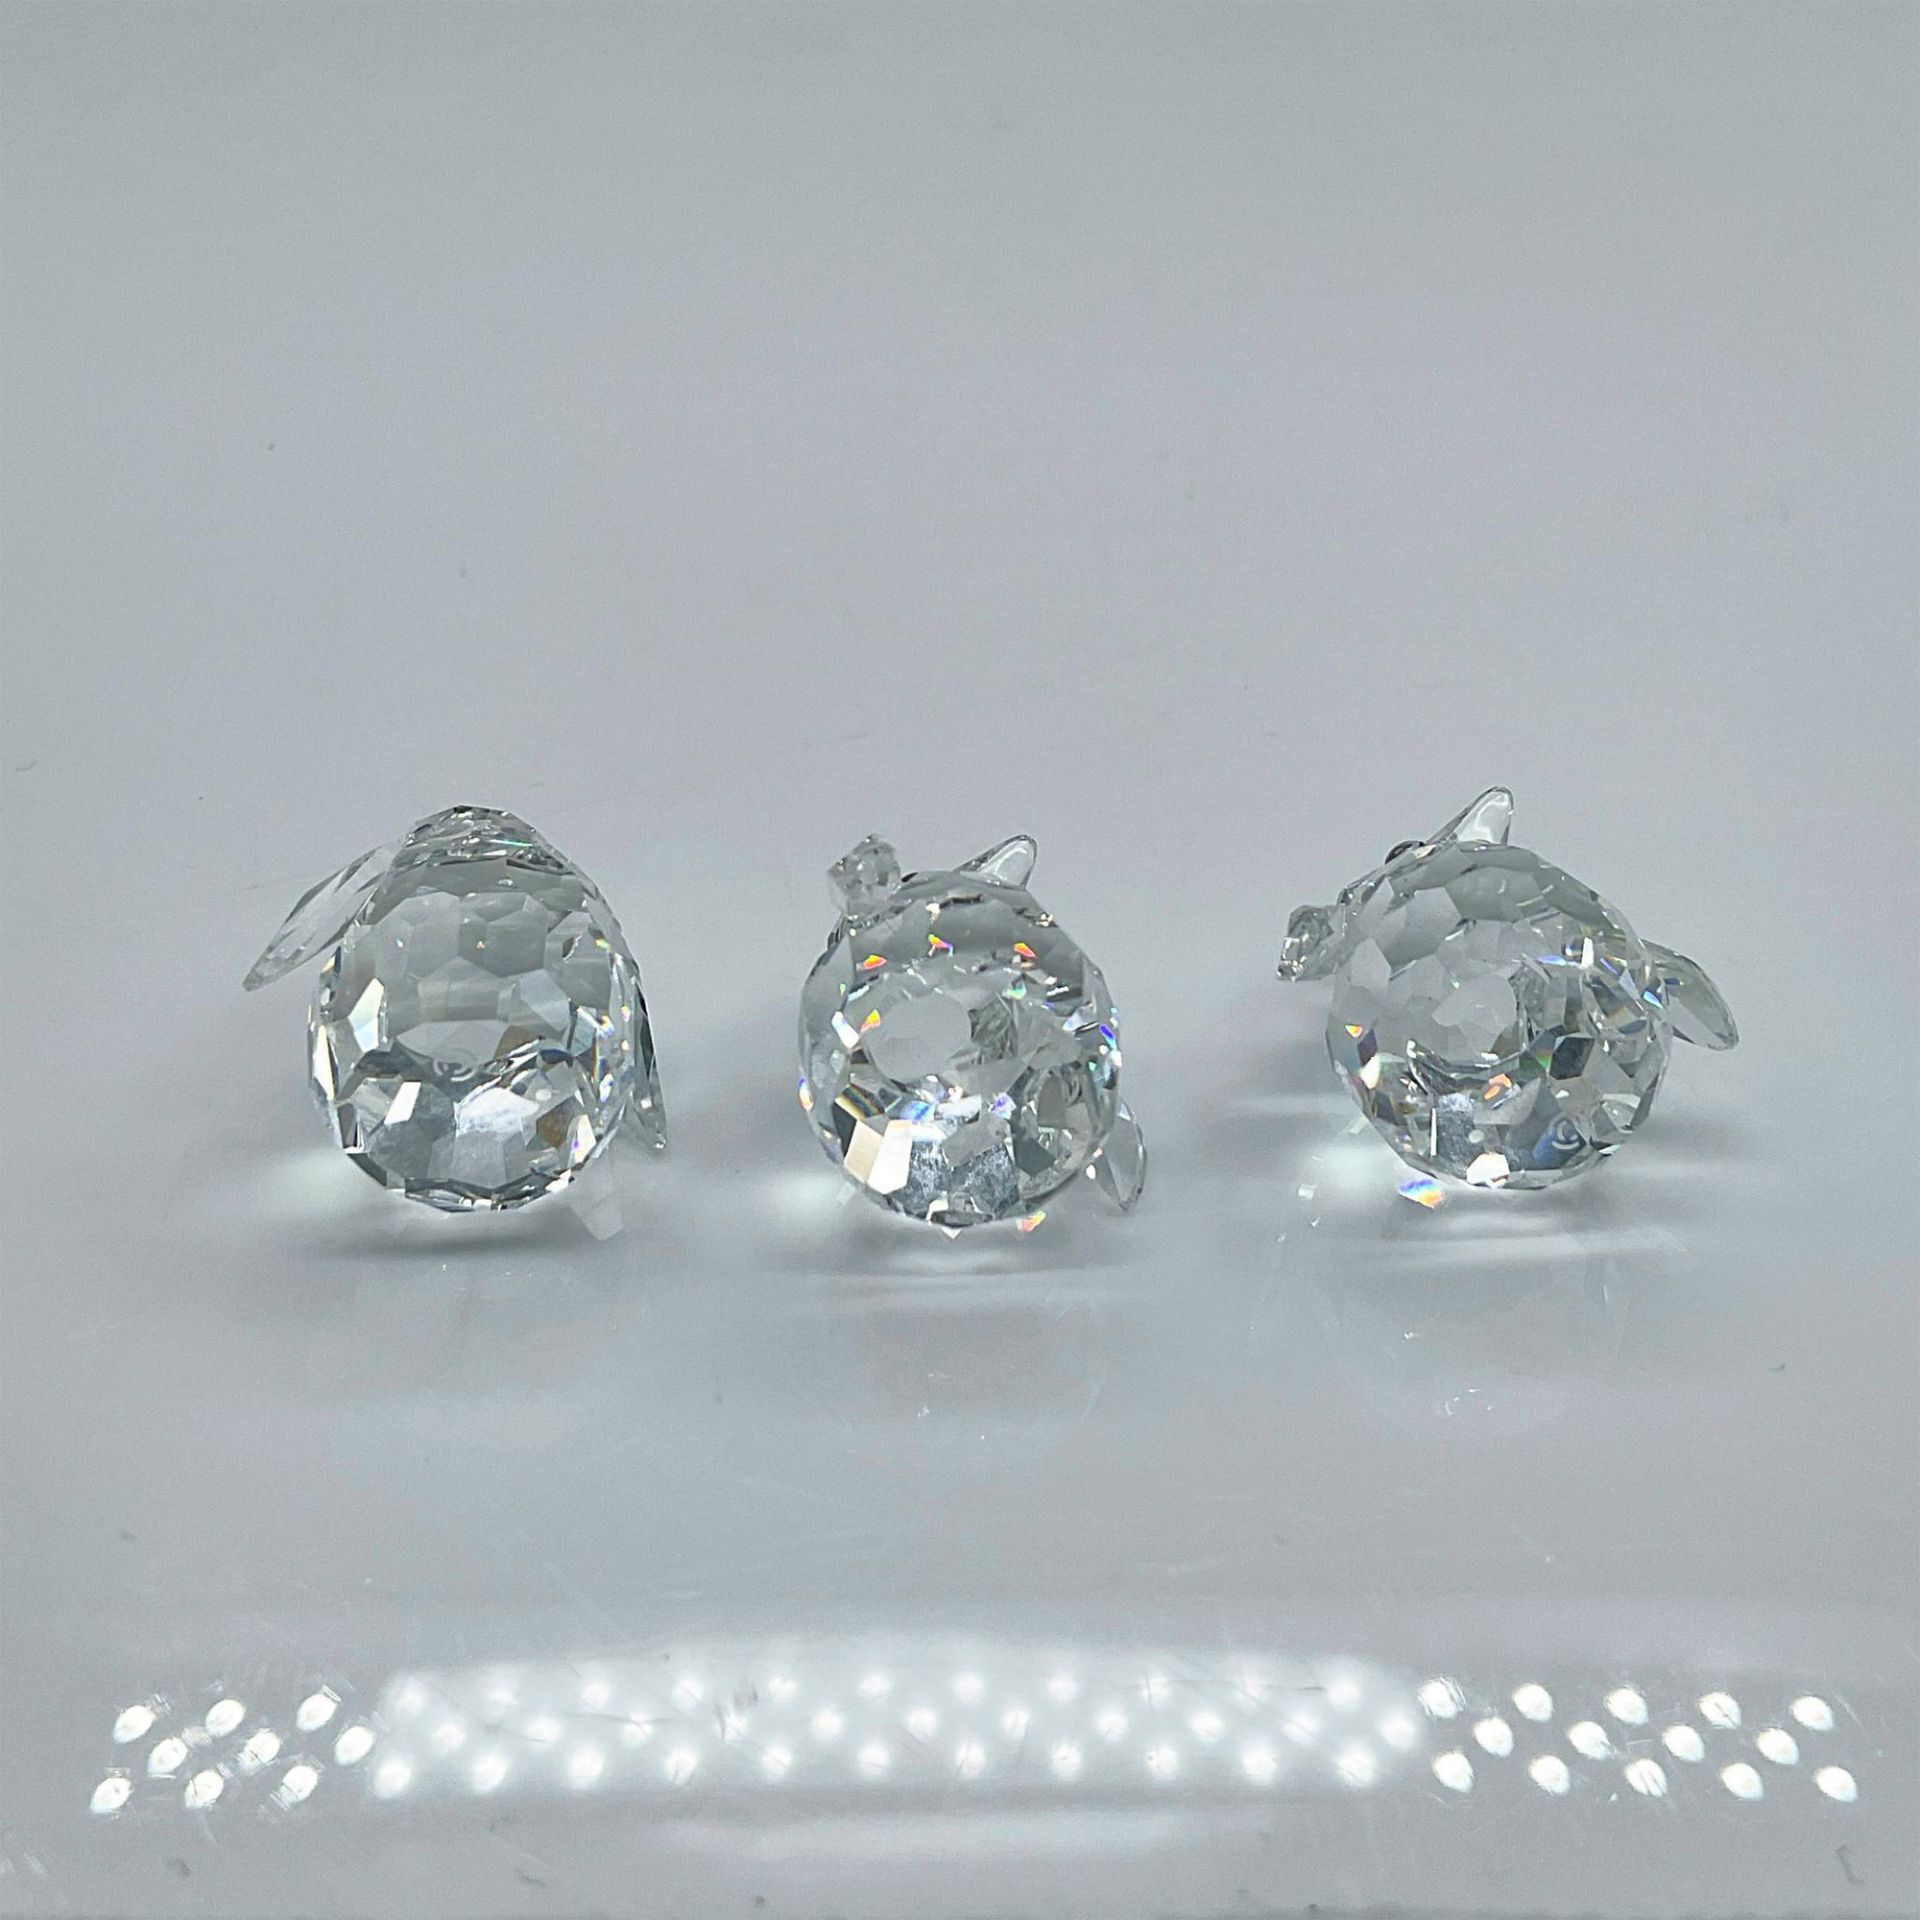 Swarovski Silver Crystal Figurines, Baby Penguins - Bild 3 aus 4